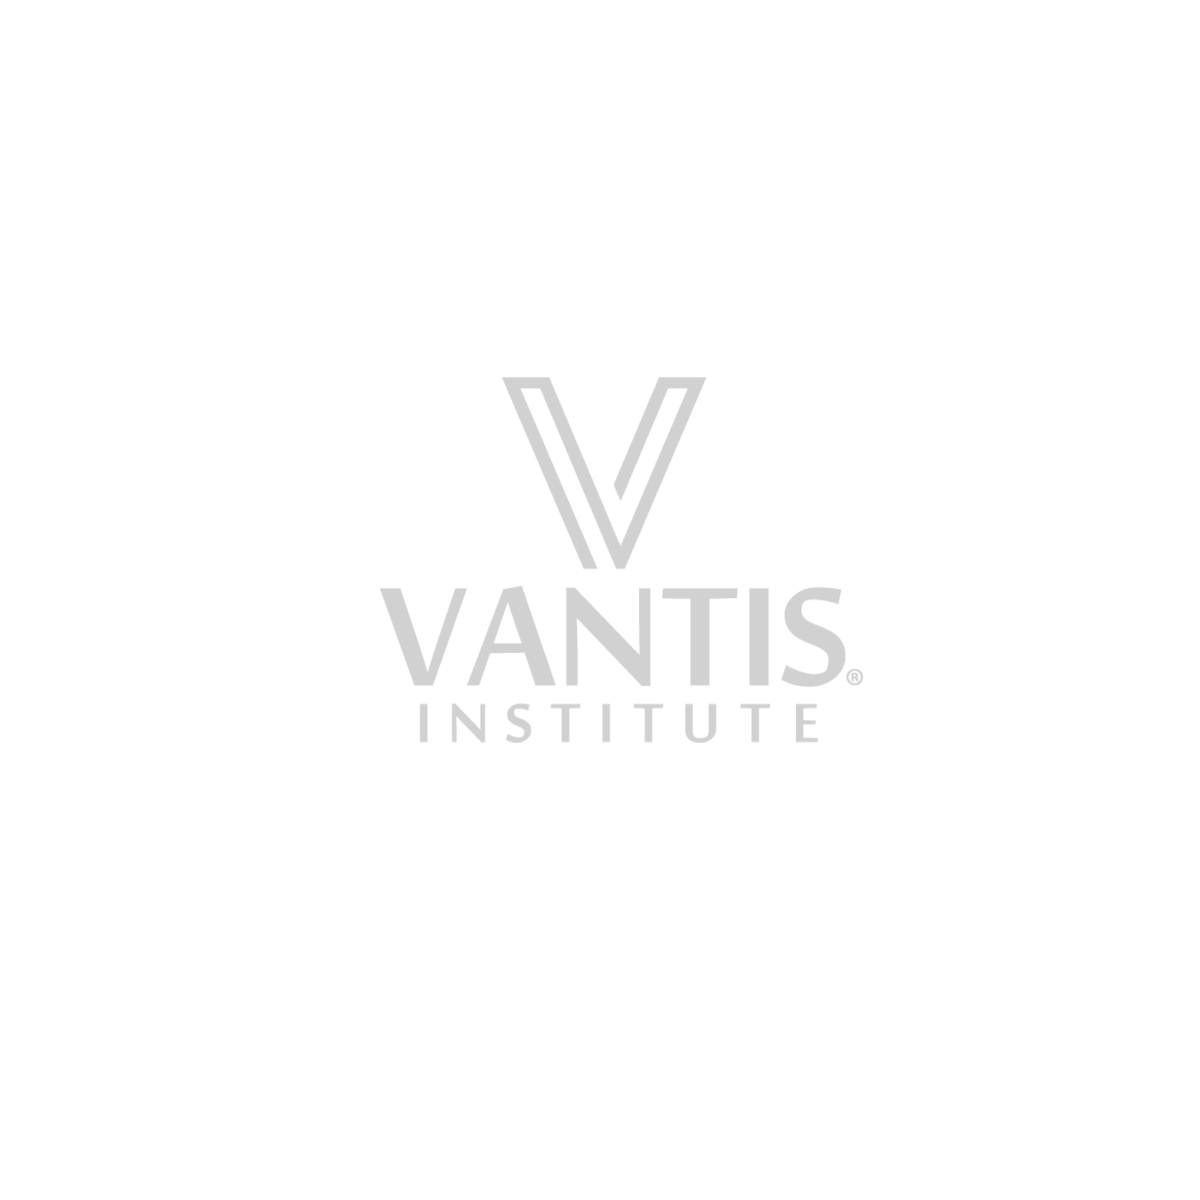 Vantis Institute.png